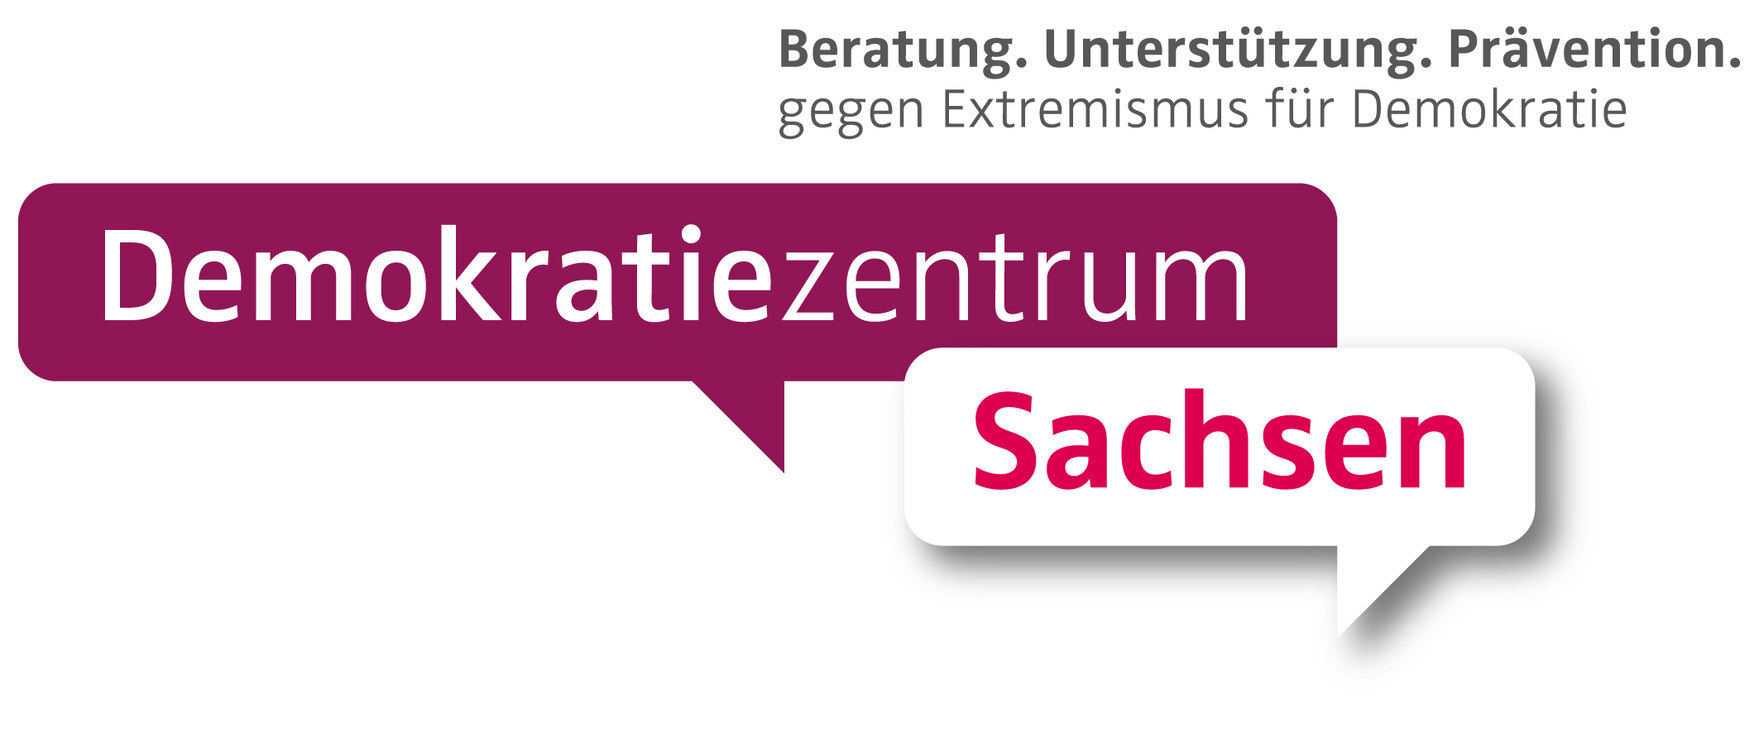 Das Bild zeigt das Logo des Demokratie-Zentrums Sachsen.